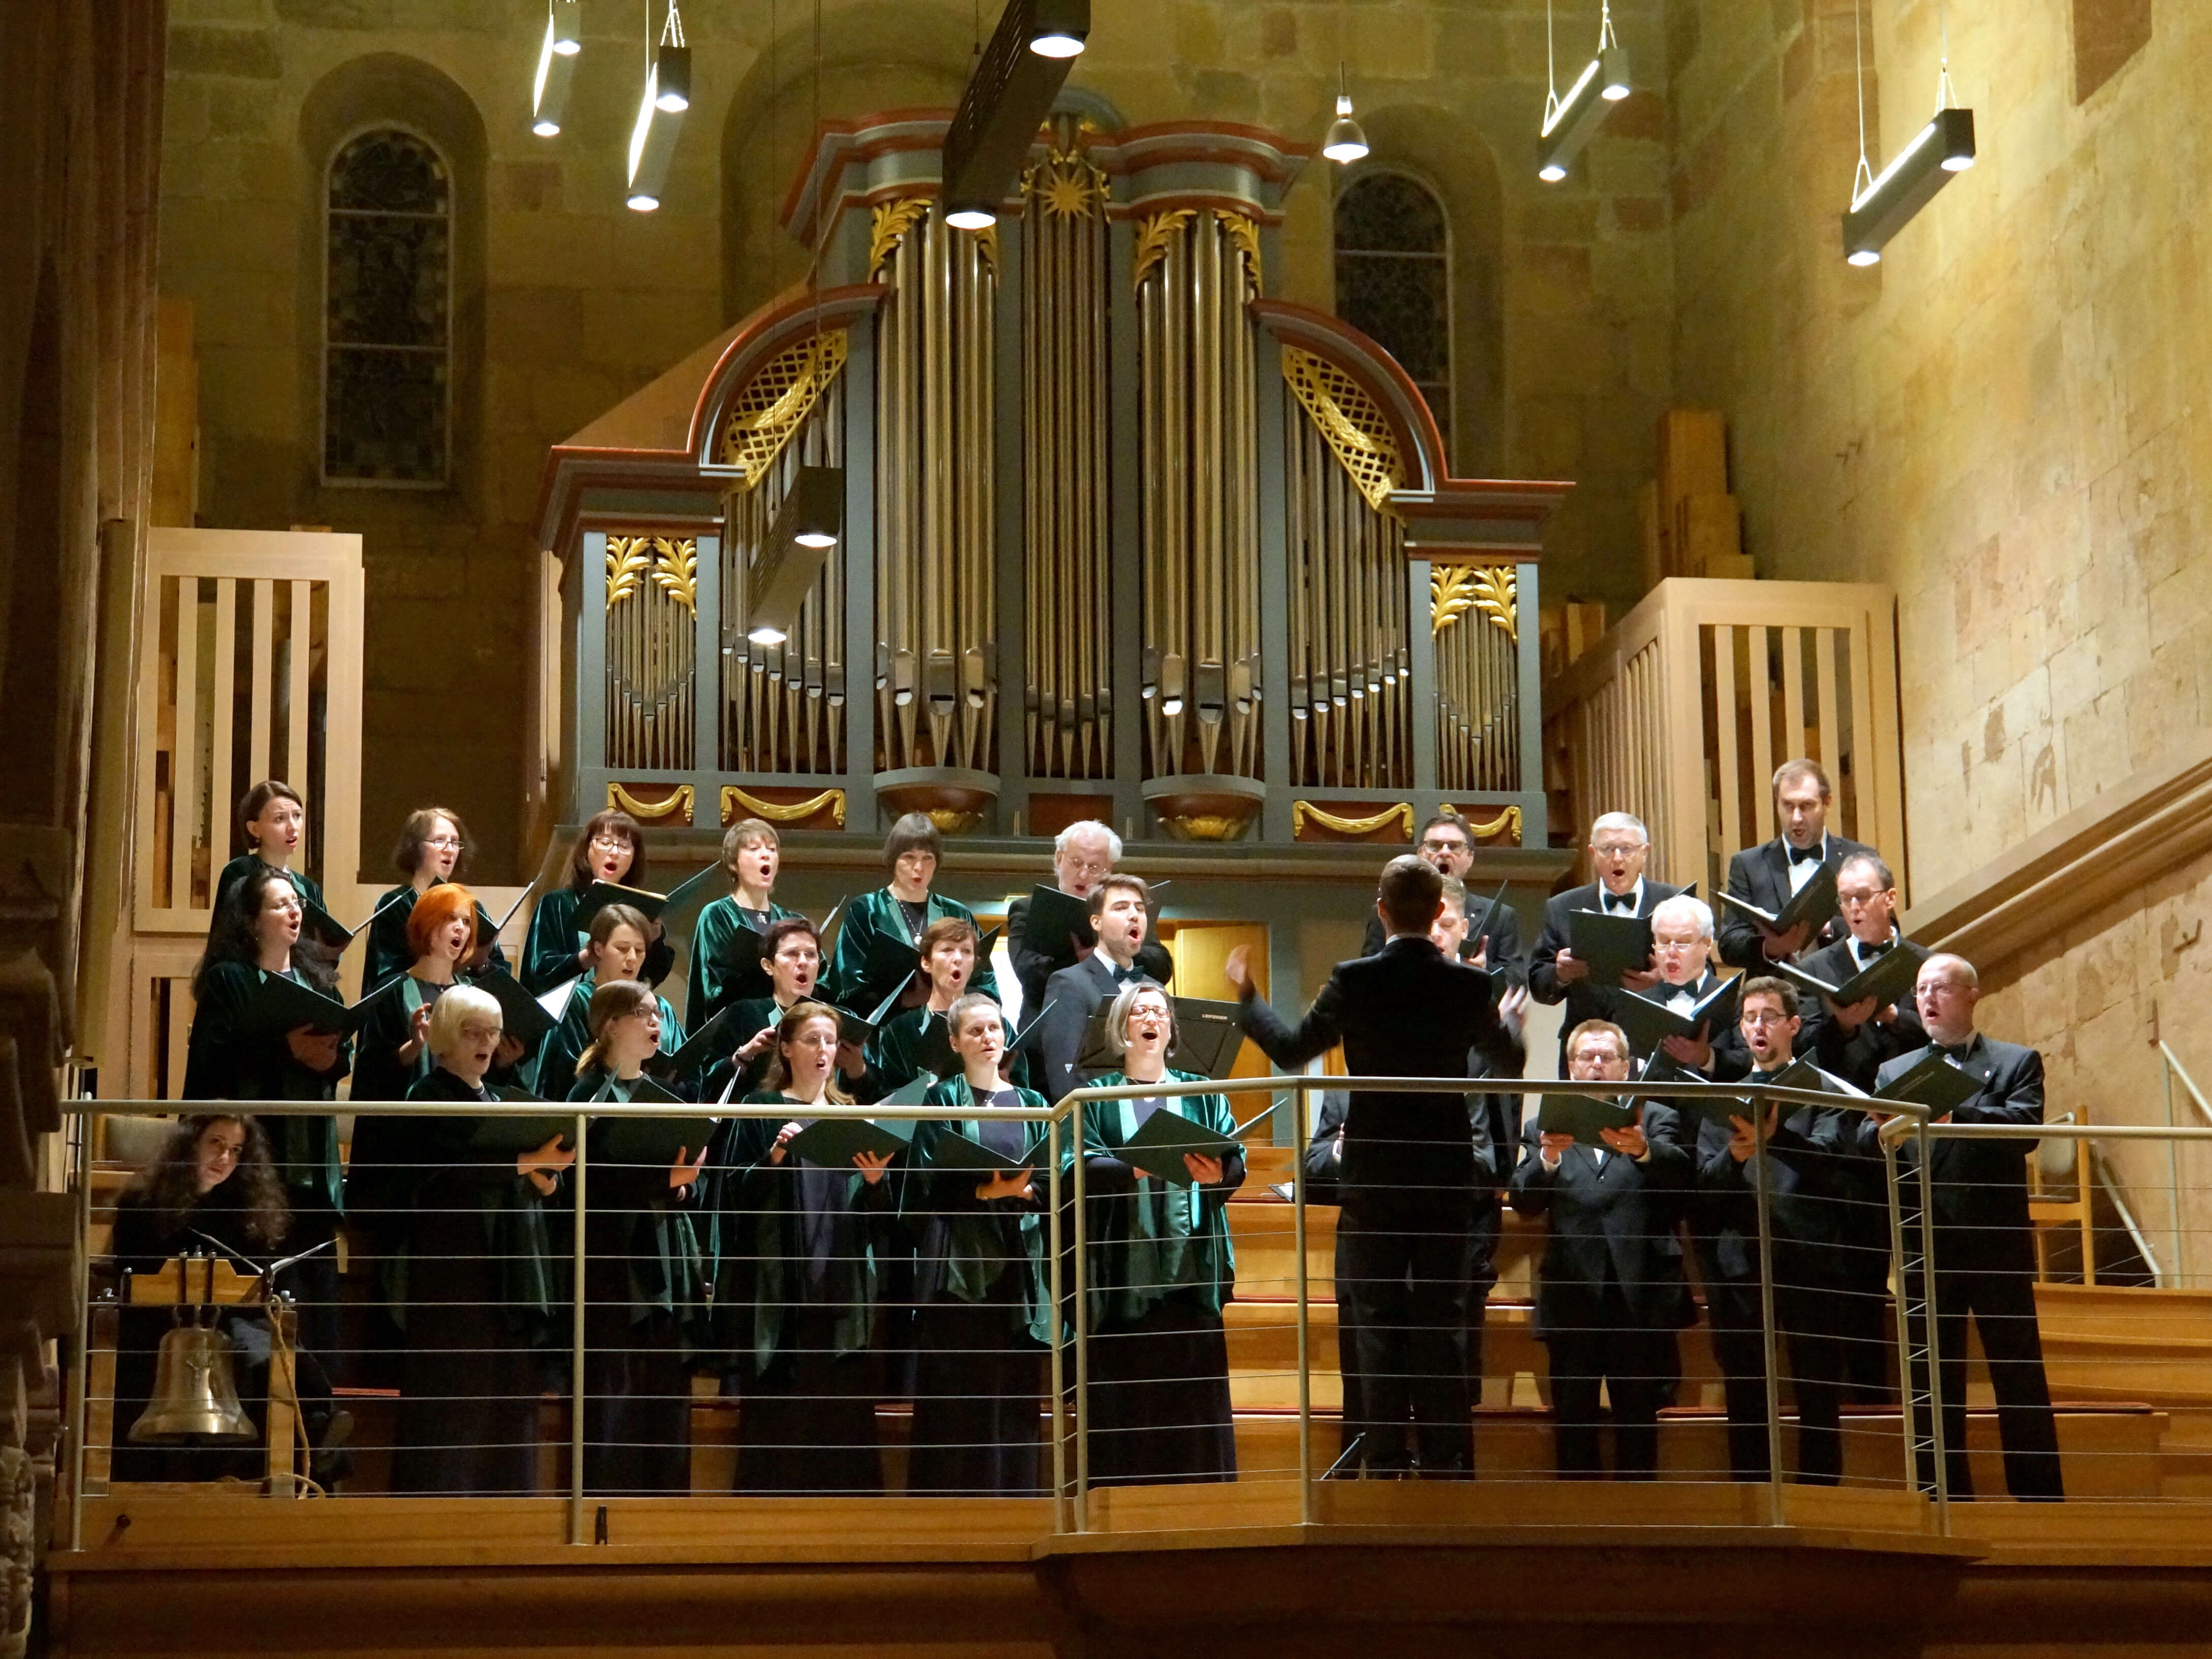 Der Leipziger Synagogalchor widmet sich intensiv und engagiert der Pflege jüdischer Musik. Die 35 Sängerinnen und Sänger – sämtlich Nichtjuden – bringen seit der Chorgründung 1962 jene Musik auf die Konzertpodien der Welt, die ihre Vorfahren beinahe vollständig vernichtet hätten.